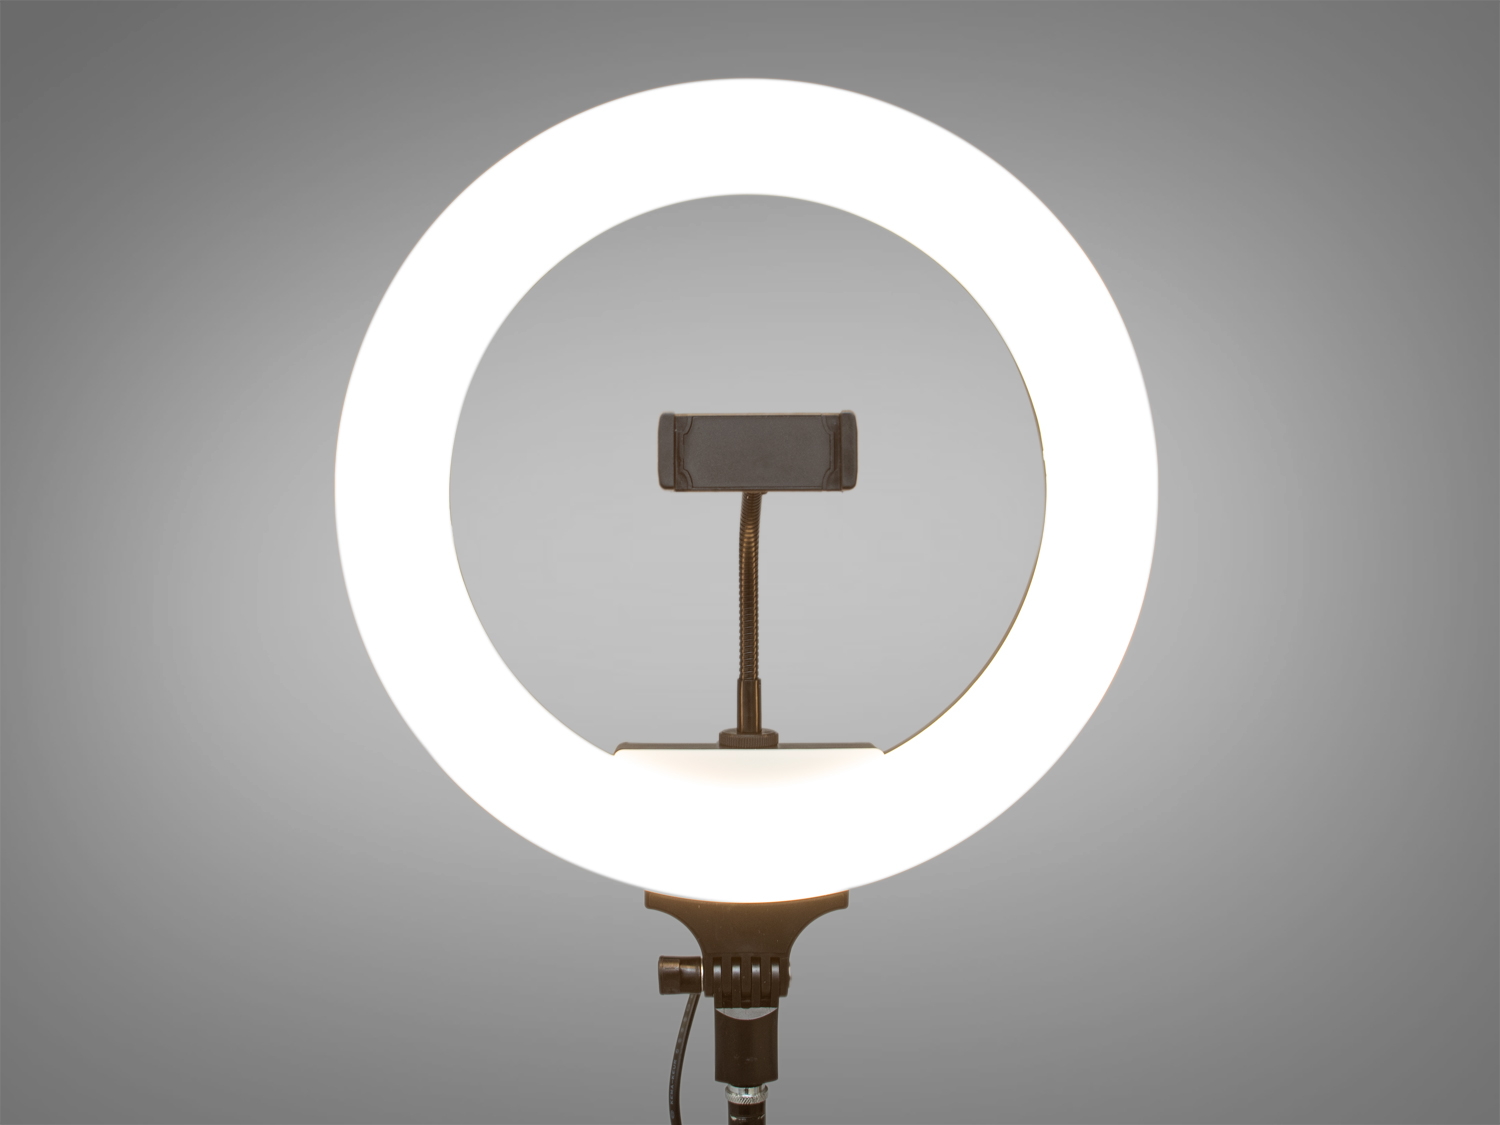 Якщо ви шукаєте ідеальний аксесуар для створення професійно виглядаючих селфі або відео, то селфі-лампа з пультом ДК стане відмінним вибором. Ця лампа, яку можна легко купити у нас на сайті: diasha.com.ua, пропонує високу якість освітлення за доступною ціною.
З розміром кільця 32 см, ця лампа забезпечує рівномірне підсвічування для портретних зйомок, що робить її ідеальною для блогерів, макіяжистів та фотографів, які прагнуть досягти досконалості в кожному кадрі. Три режими температури світла — теплий, денний та холодний — дозволяють креативно підходити до освітлення, експериментуючи з різними настроями і стилями.
Живлення 220 В забезпечує постійну надійність, а яскраві світлодіоди та розсіювач з ABS пластику гарантують, що світло буде м'яким та приємним для очей, а кольори — природними та живими. Регульована колірна температура дозволяє користувачам точно налаштувати освітлення для будь-яких умов, від домашньої зйомки до професійної фотосесії.
Пульт дистанційного керування є однією з ключових переваг цієї моделі, оскільки він дозволяє легко змінювати налаштування без необхідності відволікатися від зйомки. Це важливо для виробництва контенту, де кожна секунда є на вагу золота.
Для зручності користувачів, лампа оснащена штифт-адаптером для легкого кріплення на штативи студійного світла, що робить її багатофункціональним інструментом для різних типів зйомки. В комплекті з лампою йдуть всі необхідні аксесуари: пульт ДК, тримач для телефону, що легко встановлюється 